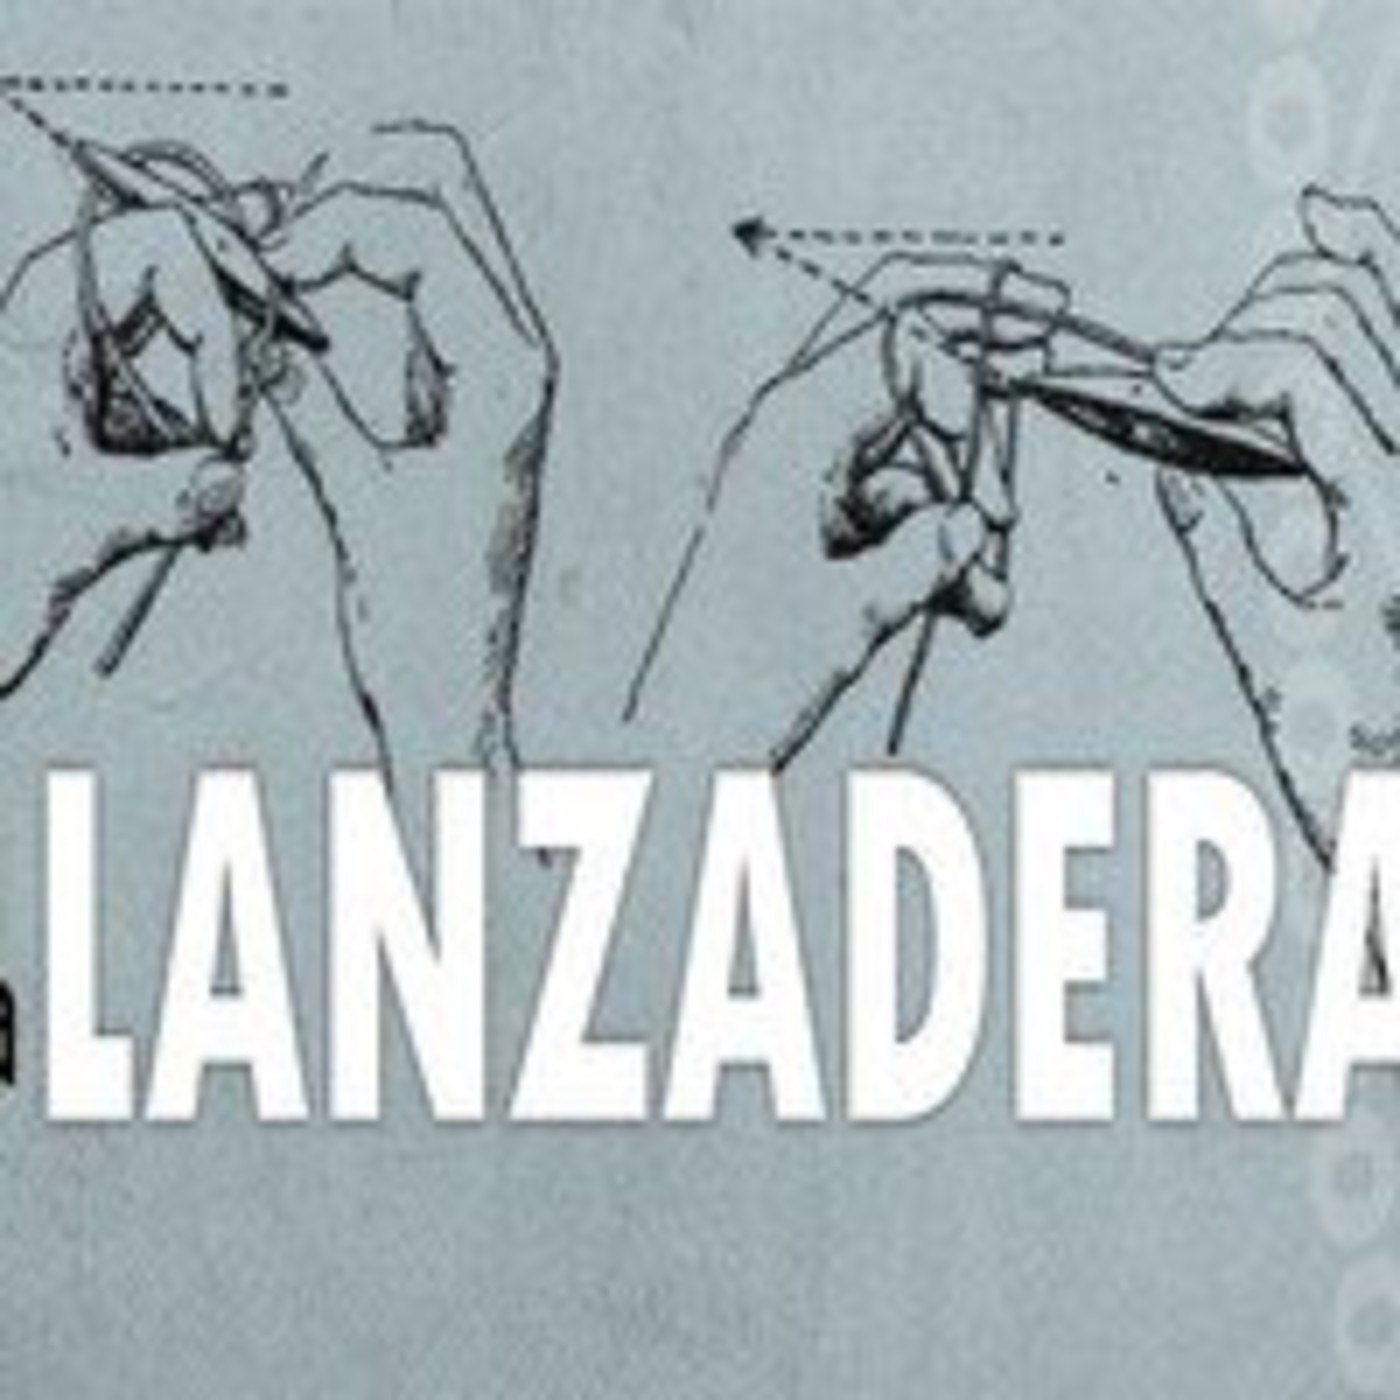 La Lanzadera - 04/1516 - 20/04/2016